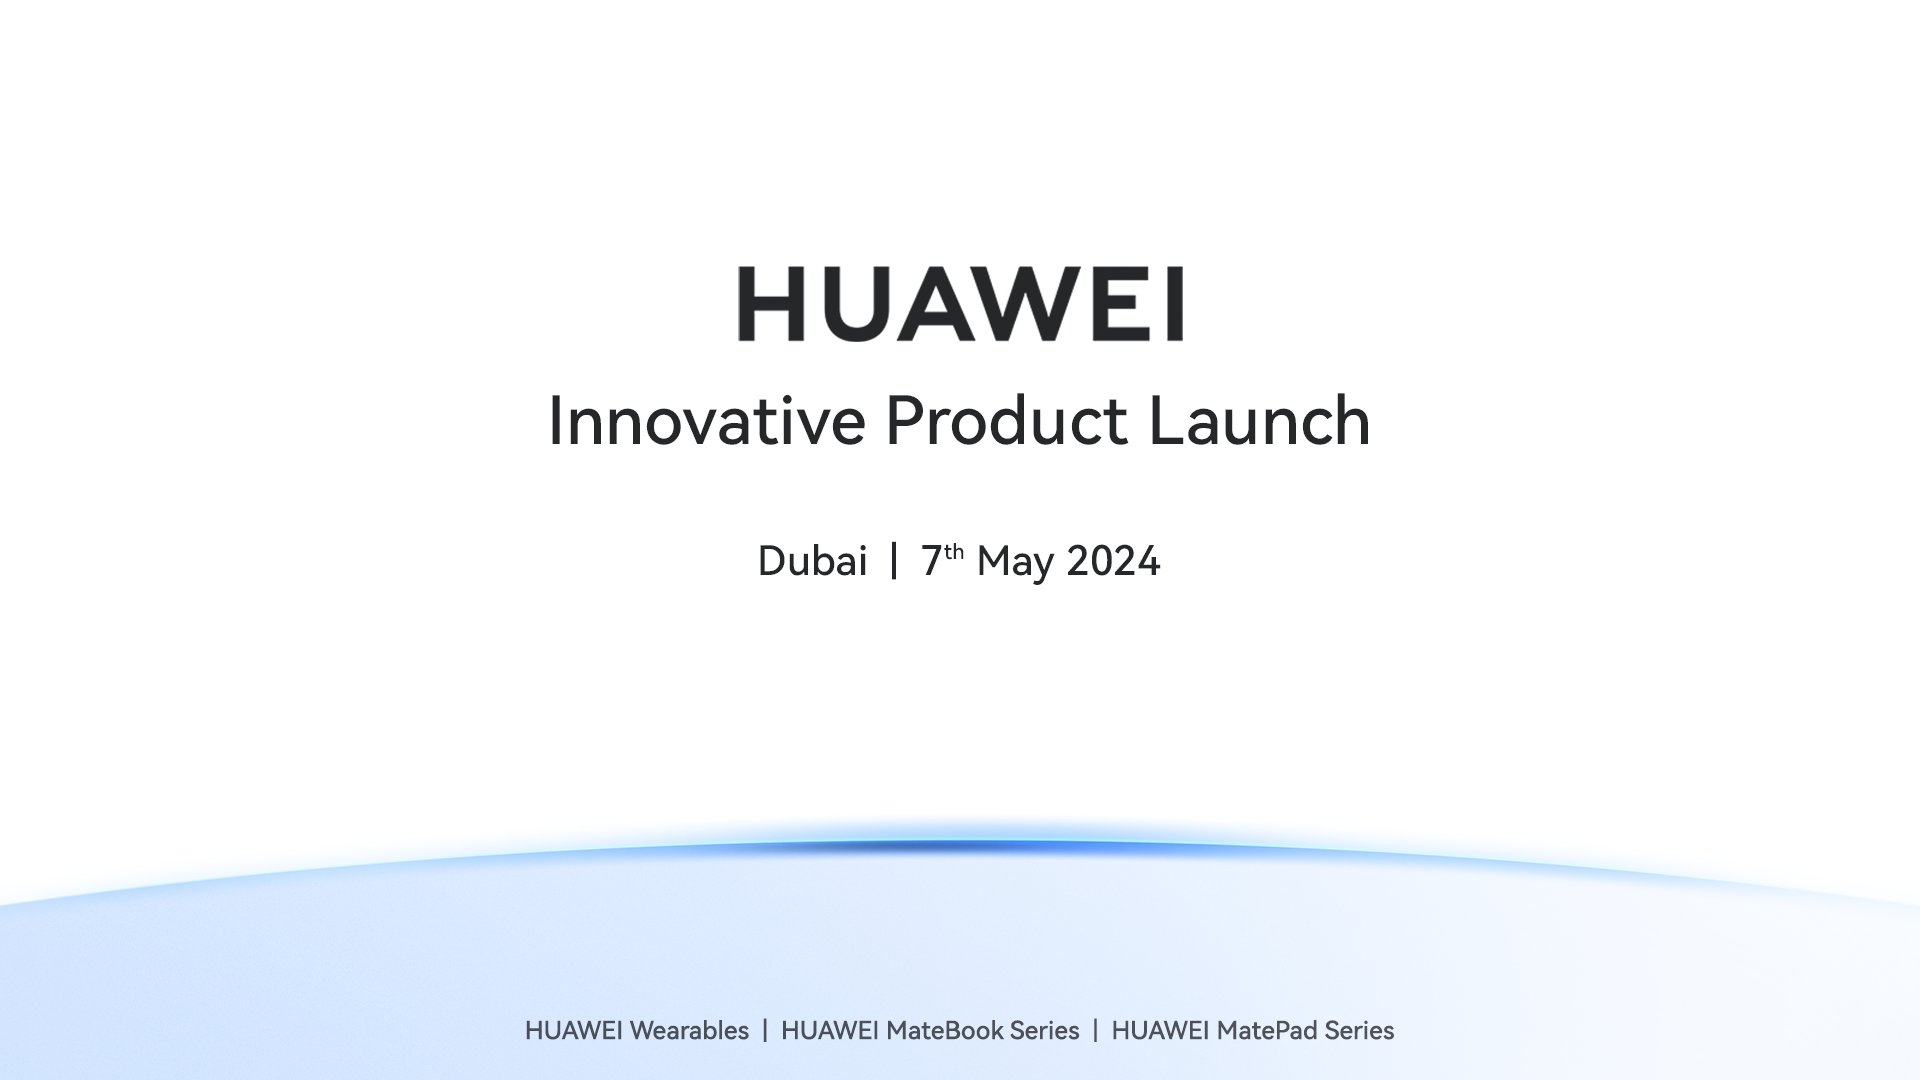 撞车苹果，华为宣布 5 月 7 日在迪拜举行全球创新产品发布会